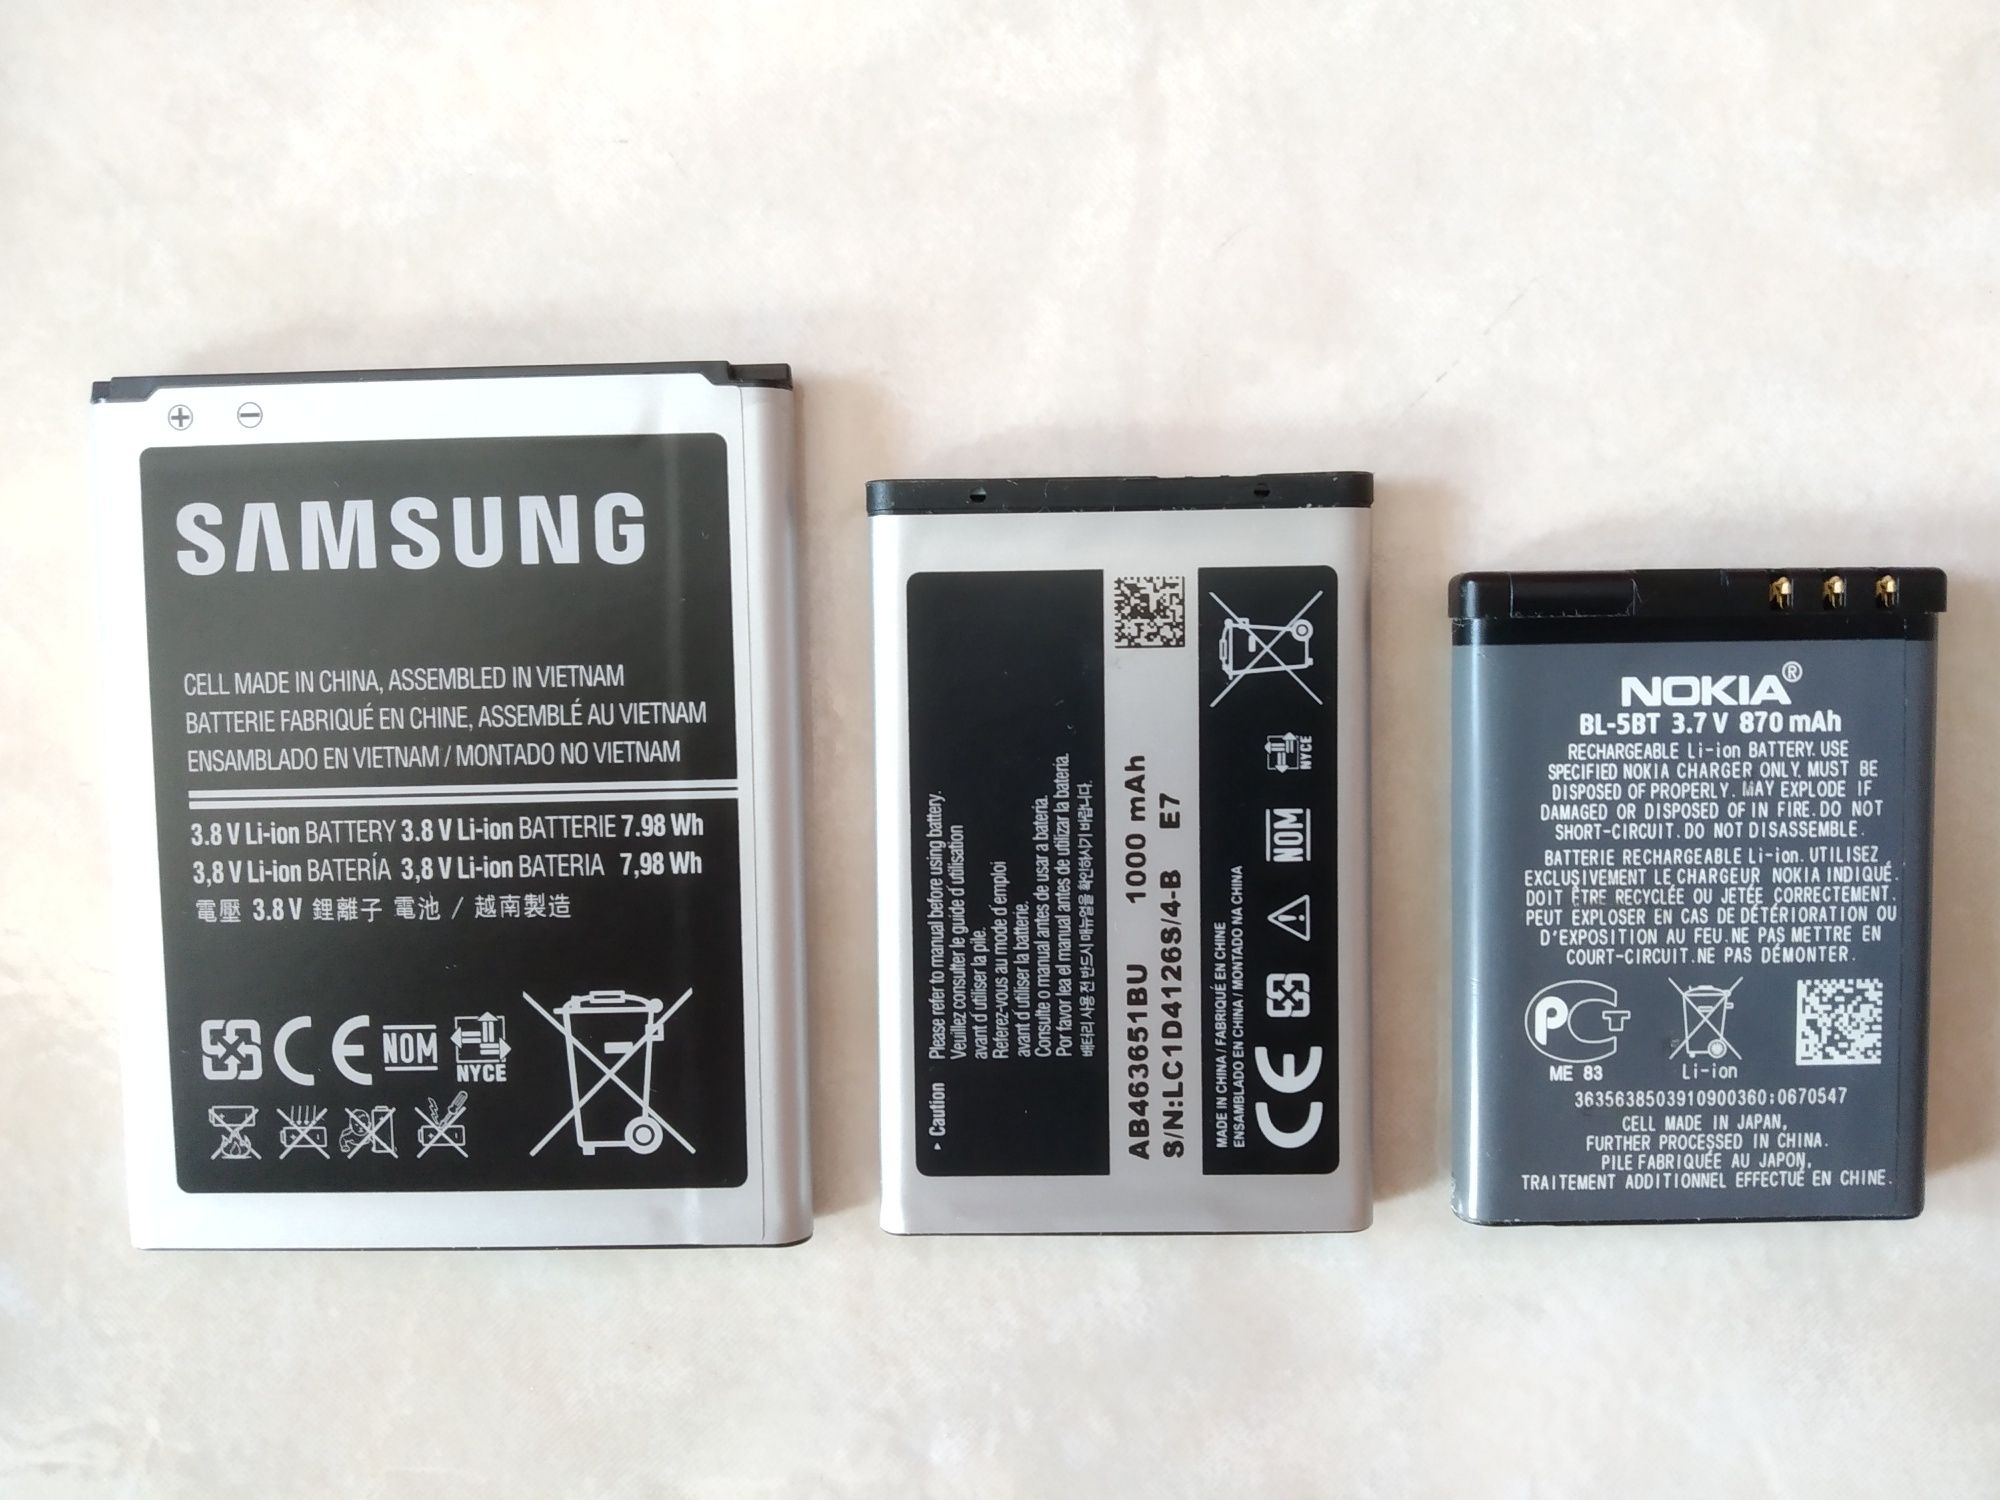 Baterias para telemóvel Samsung e Nokia